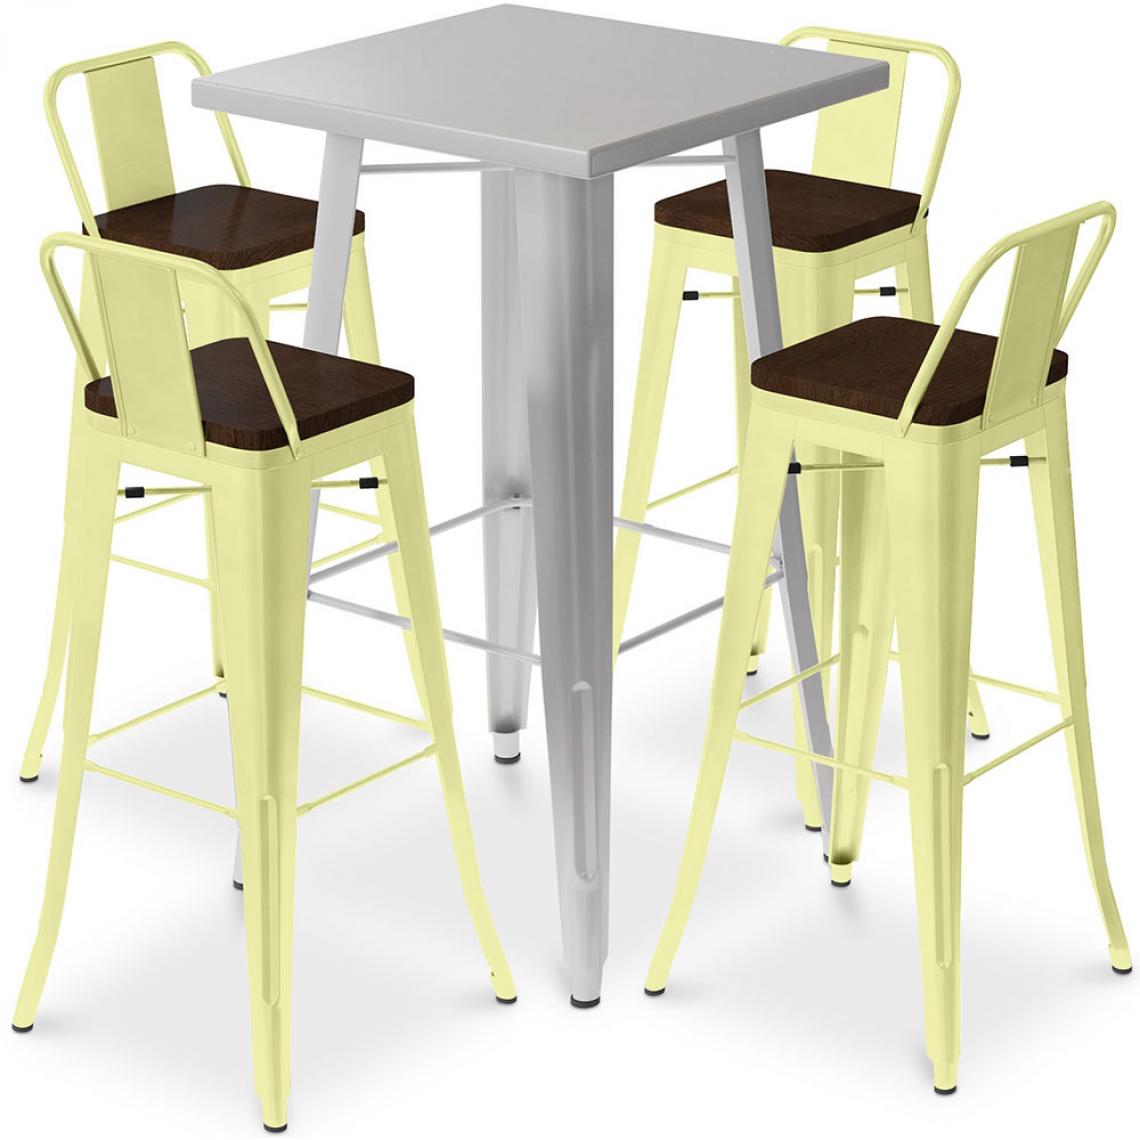 Iconik Interior - Table de bar argentée + 4 tabourets de bar en acier Ensemble Bistrot Stylix Design industriel - Nouvelle édition Jaune pâle - Tabourets